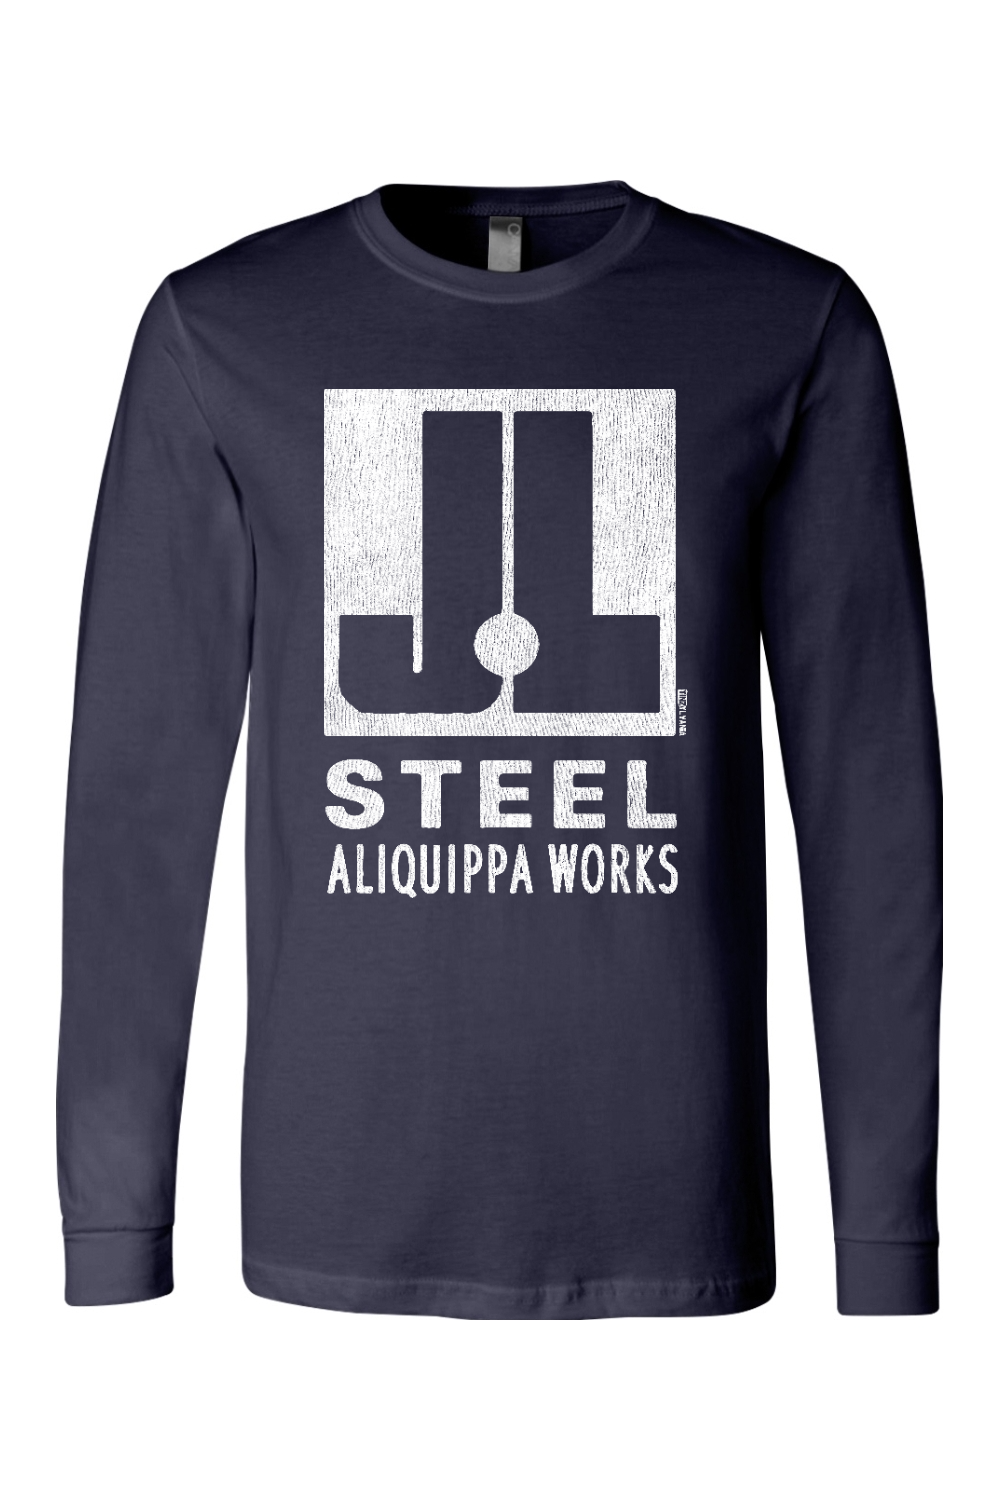 J&L Steel - Aliquippa Works - Long Sleeve Tee - Yinzylvania